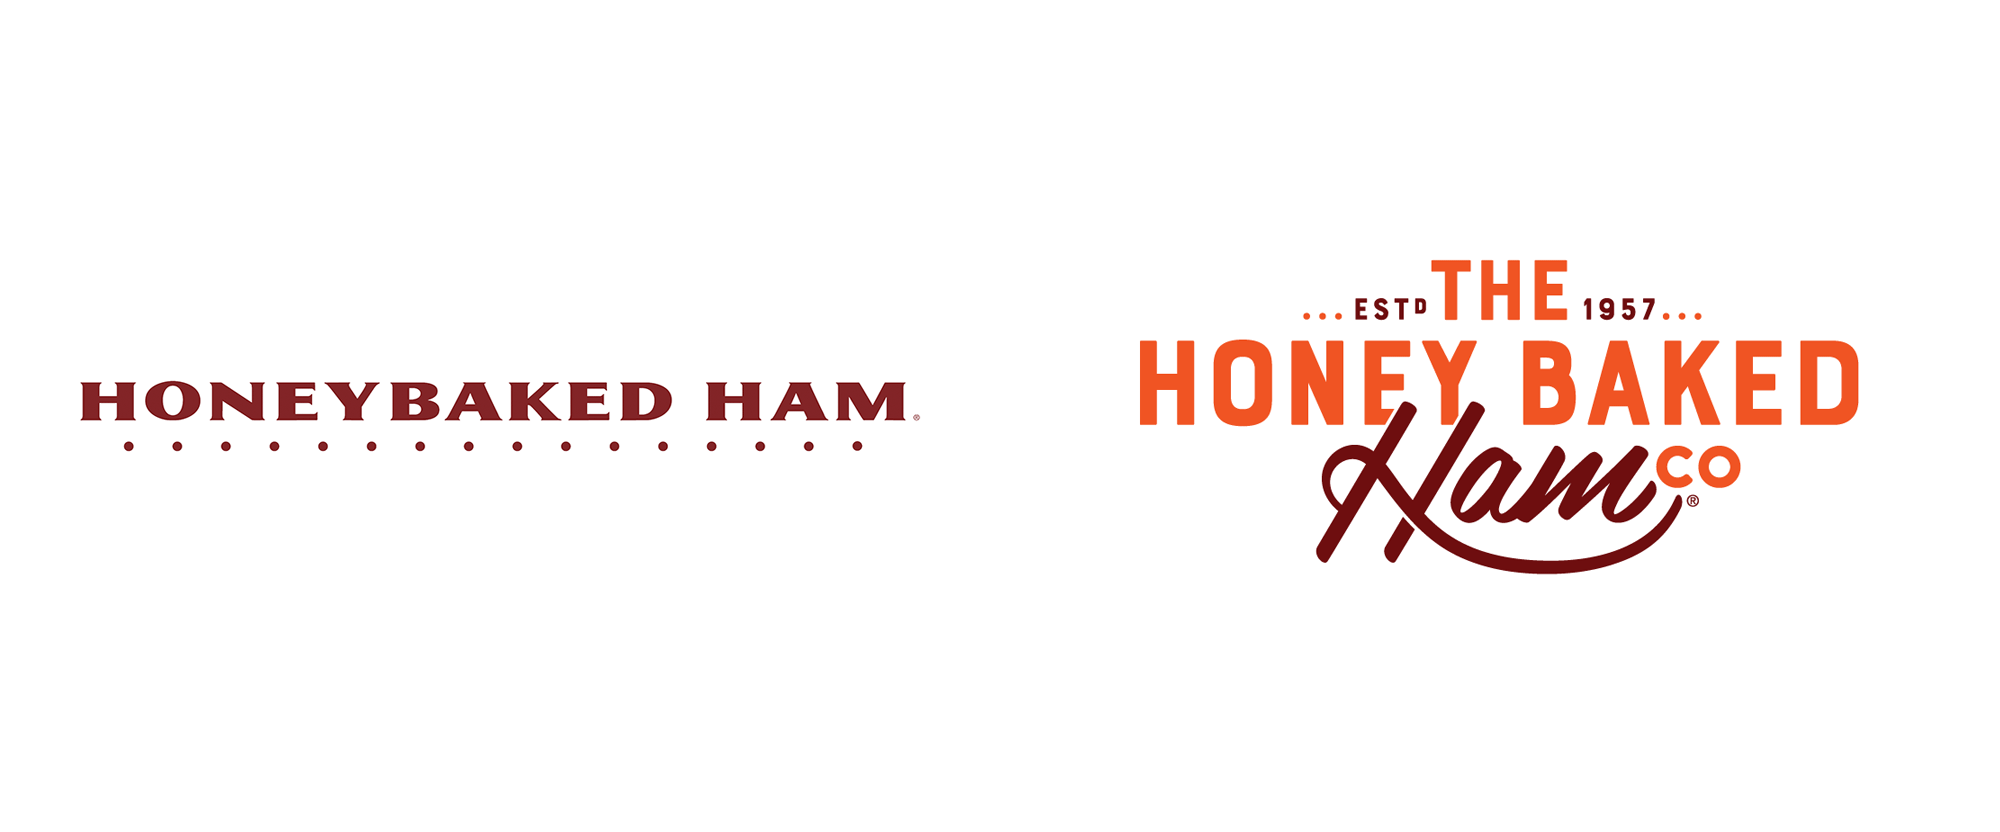 Ham Logo - Brand New: New Logo for The Honey Baked Ham